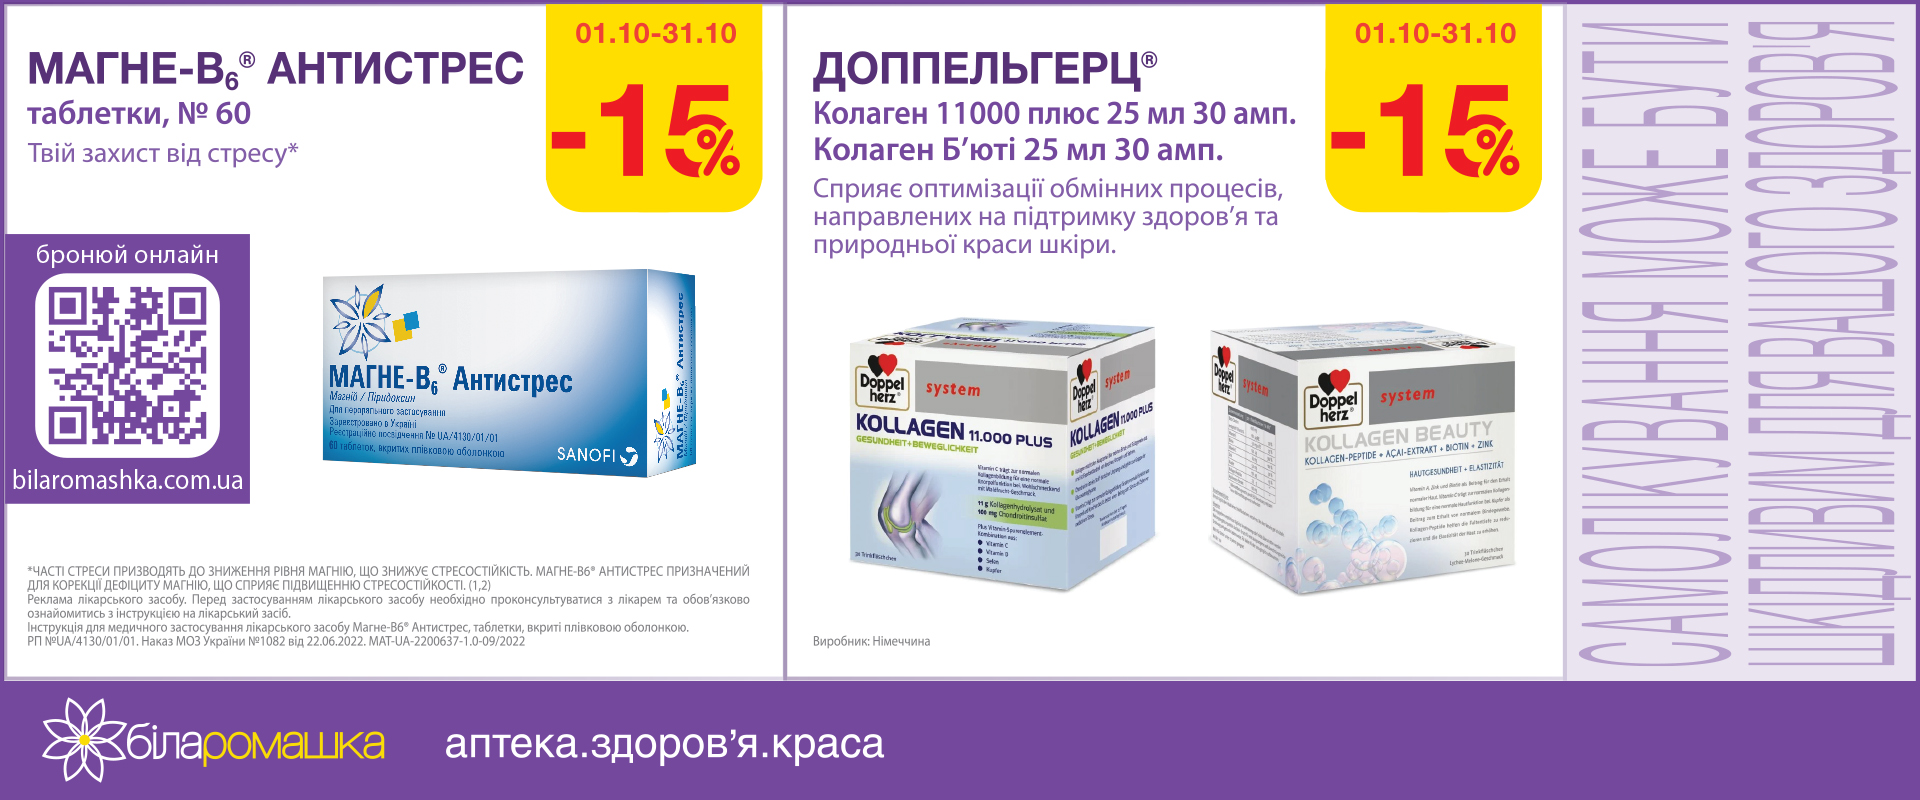 offers in the "Bila romashka" pharmacy